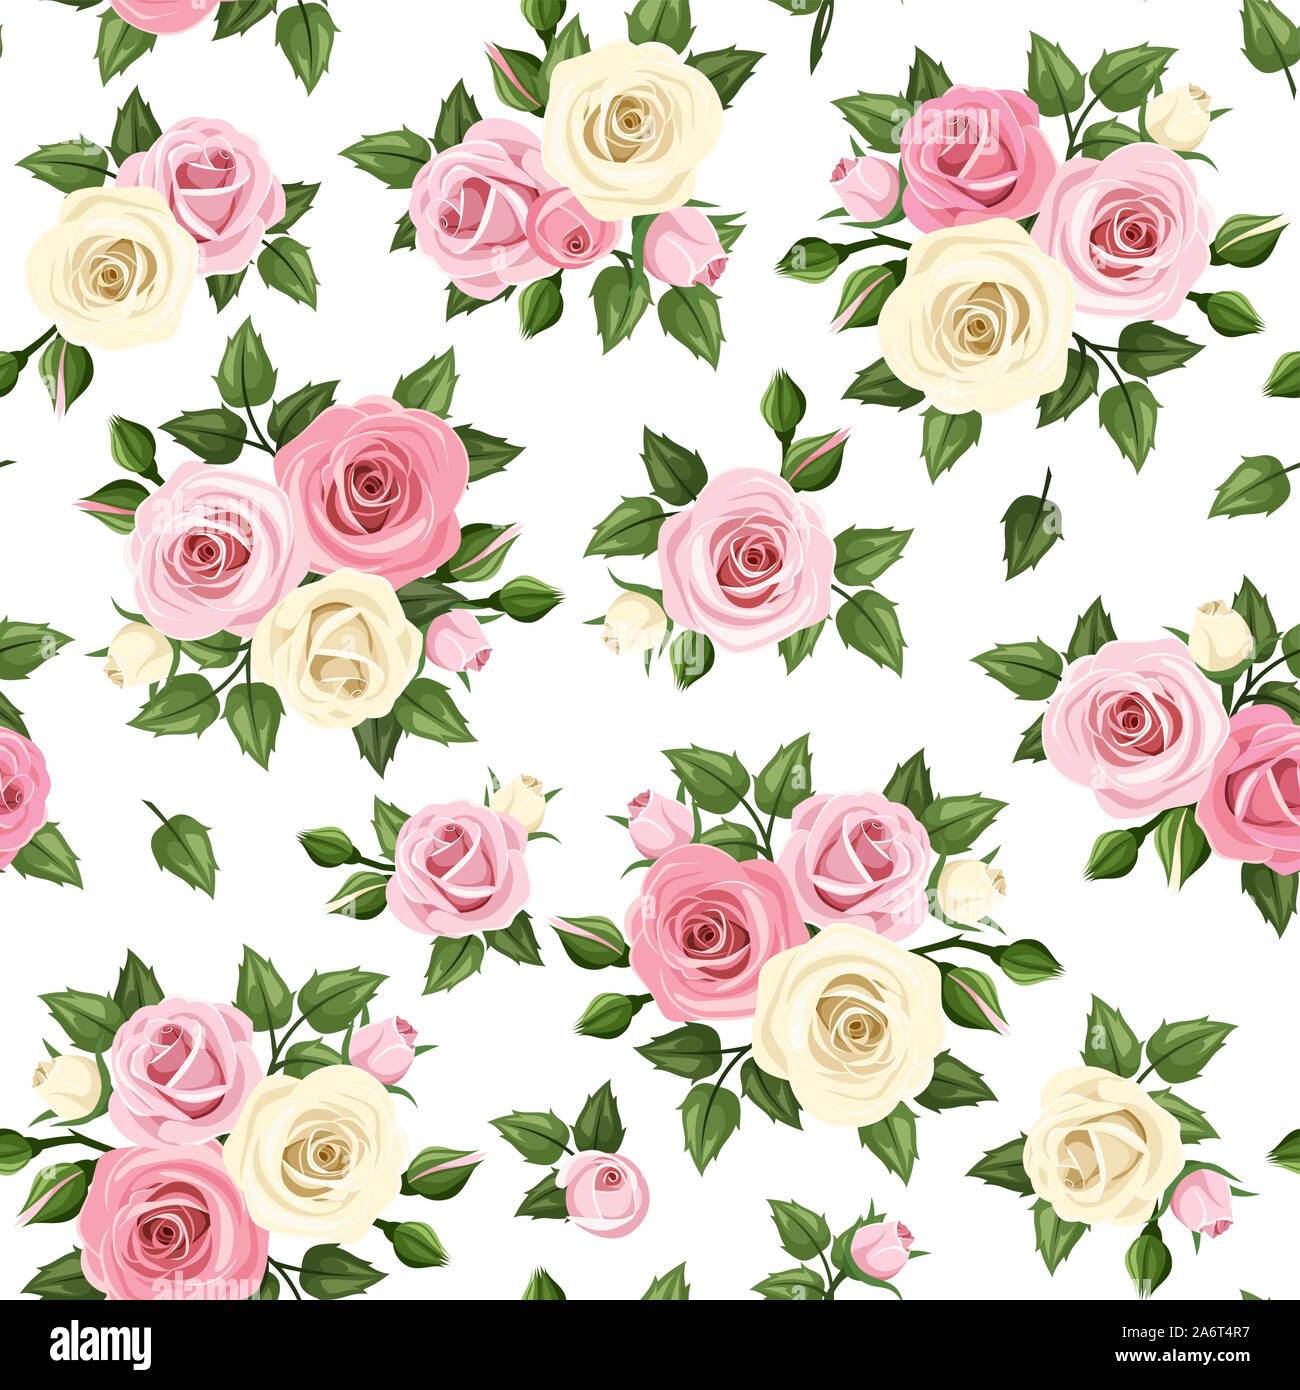 Vektor nahtlose Muster mit rosa und weißen Rosen auf einem weißen Hintergrund. Stock Vektor